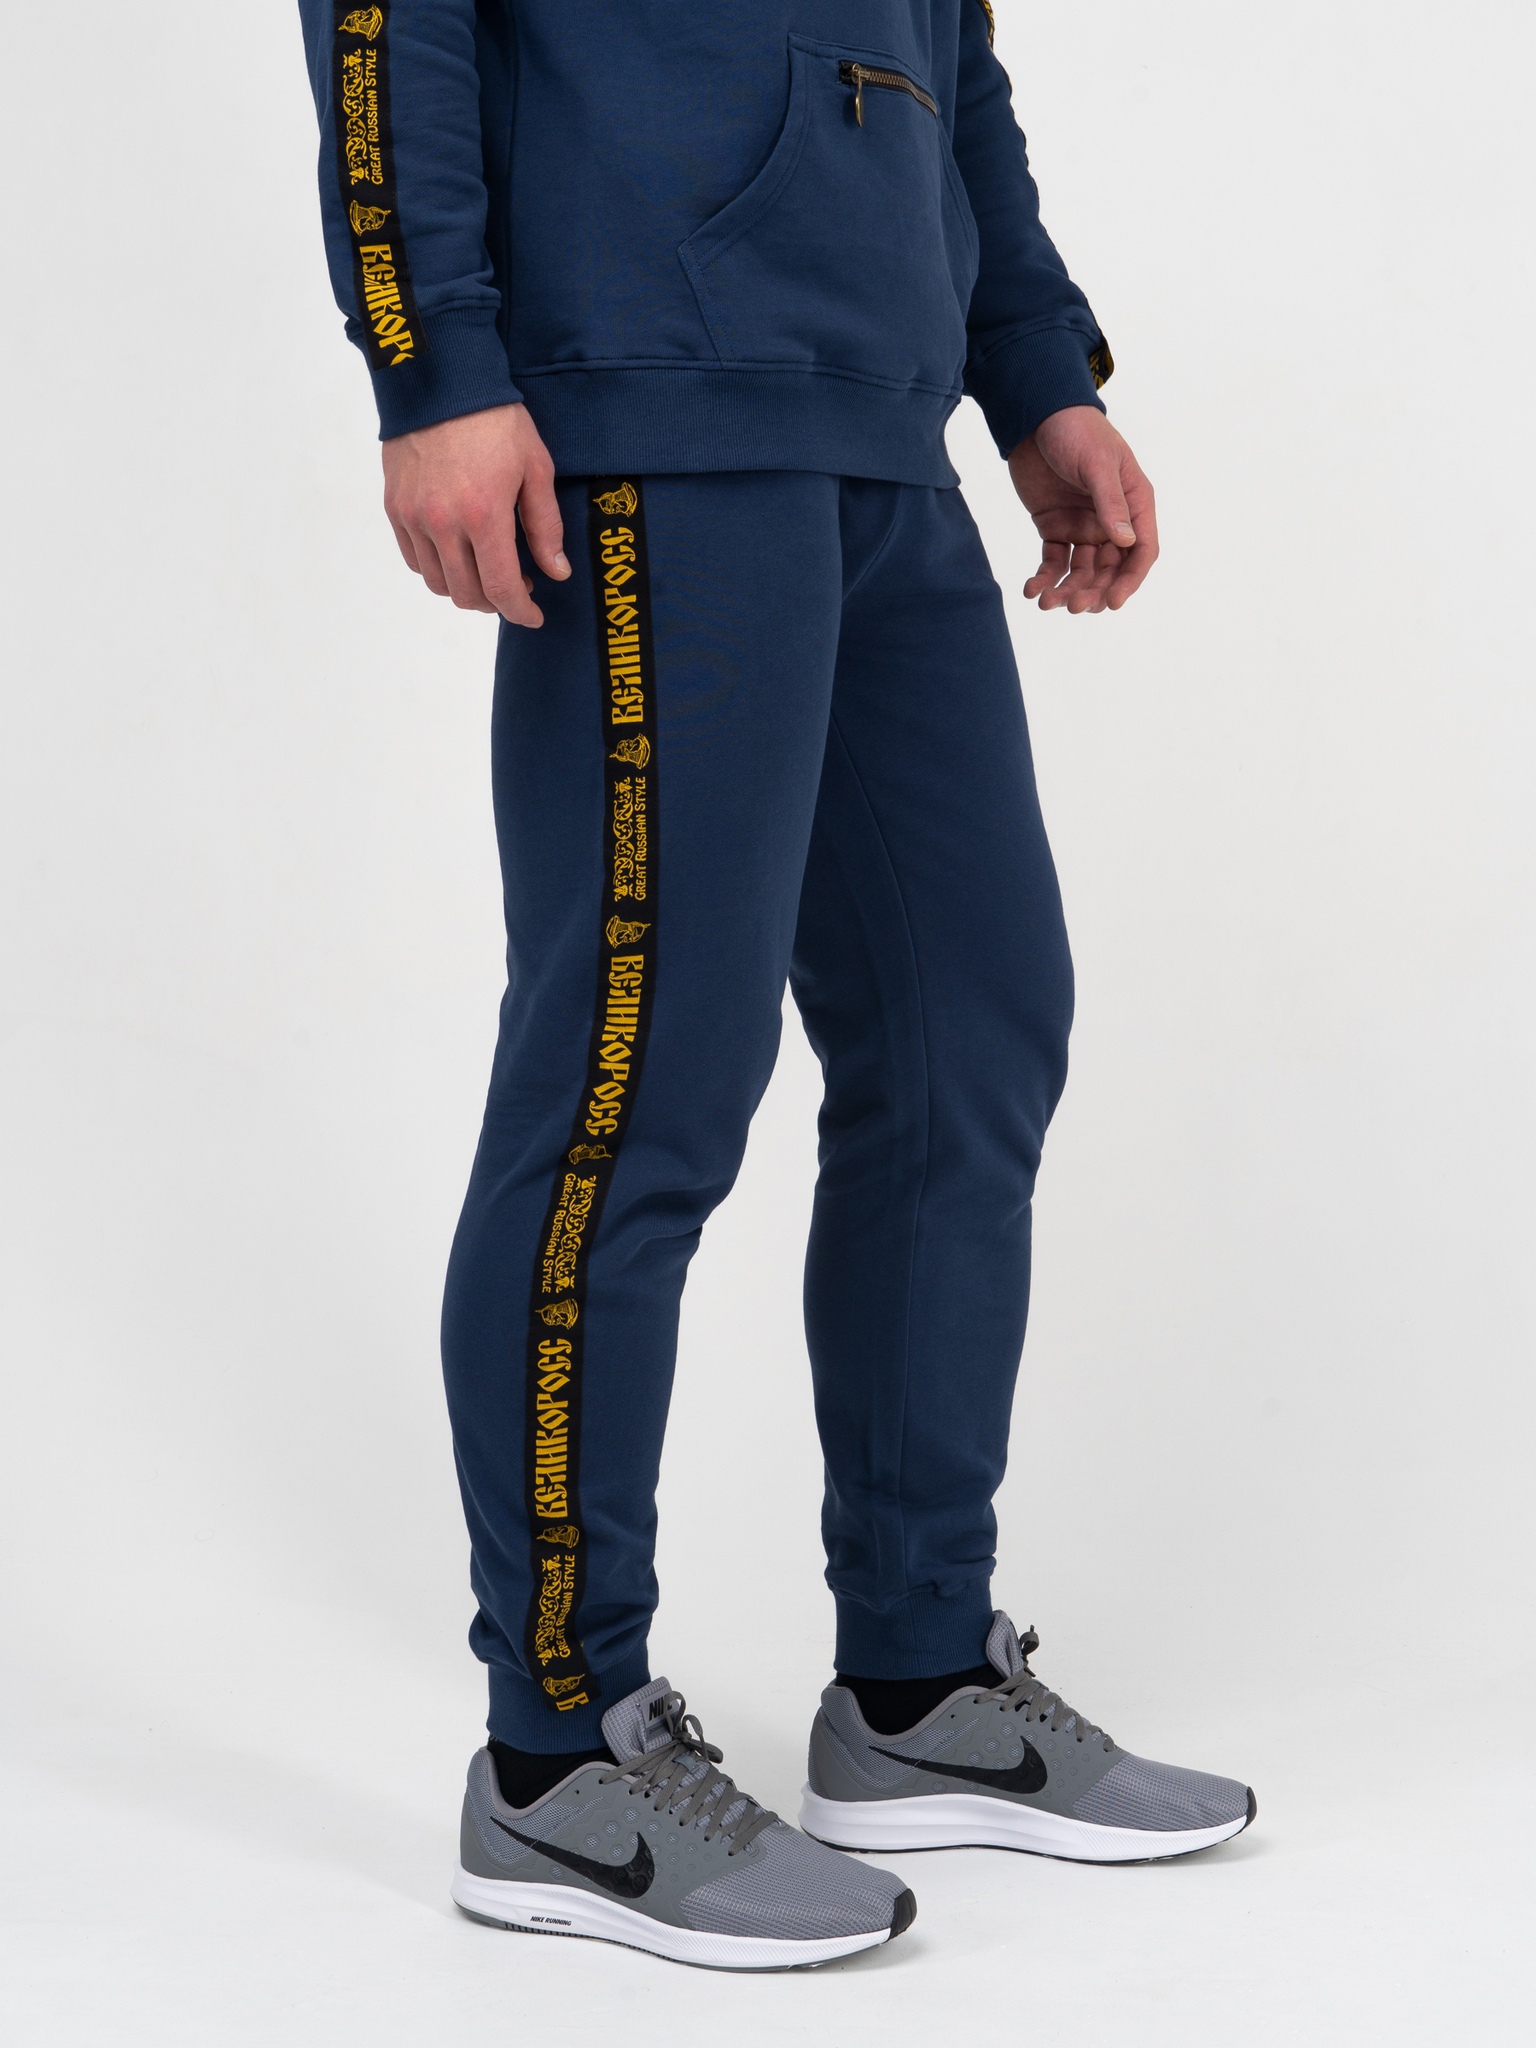 фото Спортивные брюки мужские великоросс чемпион синие 58 ru